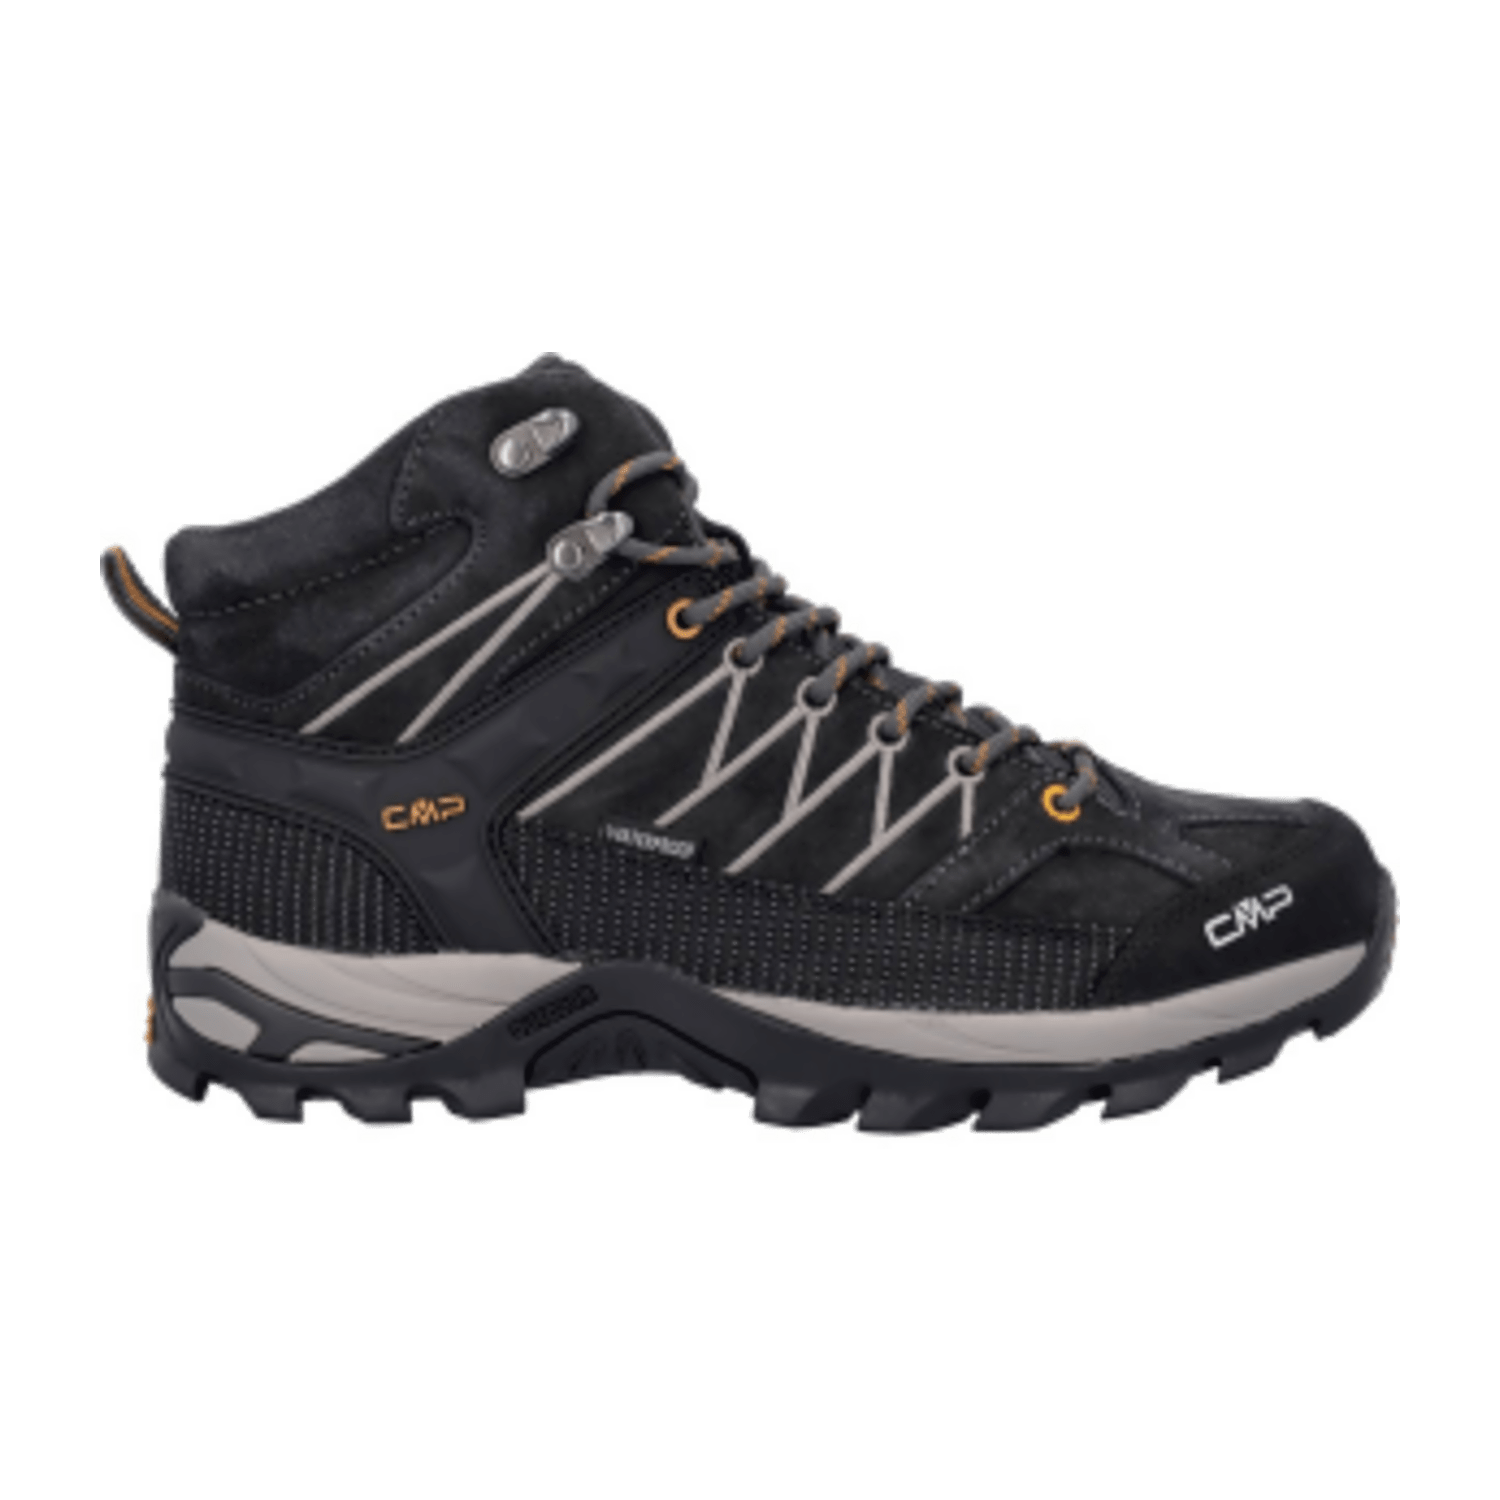 CMP Rigel Mid Trekking Shoe waterproof